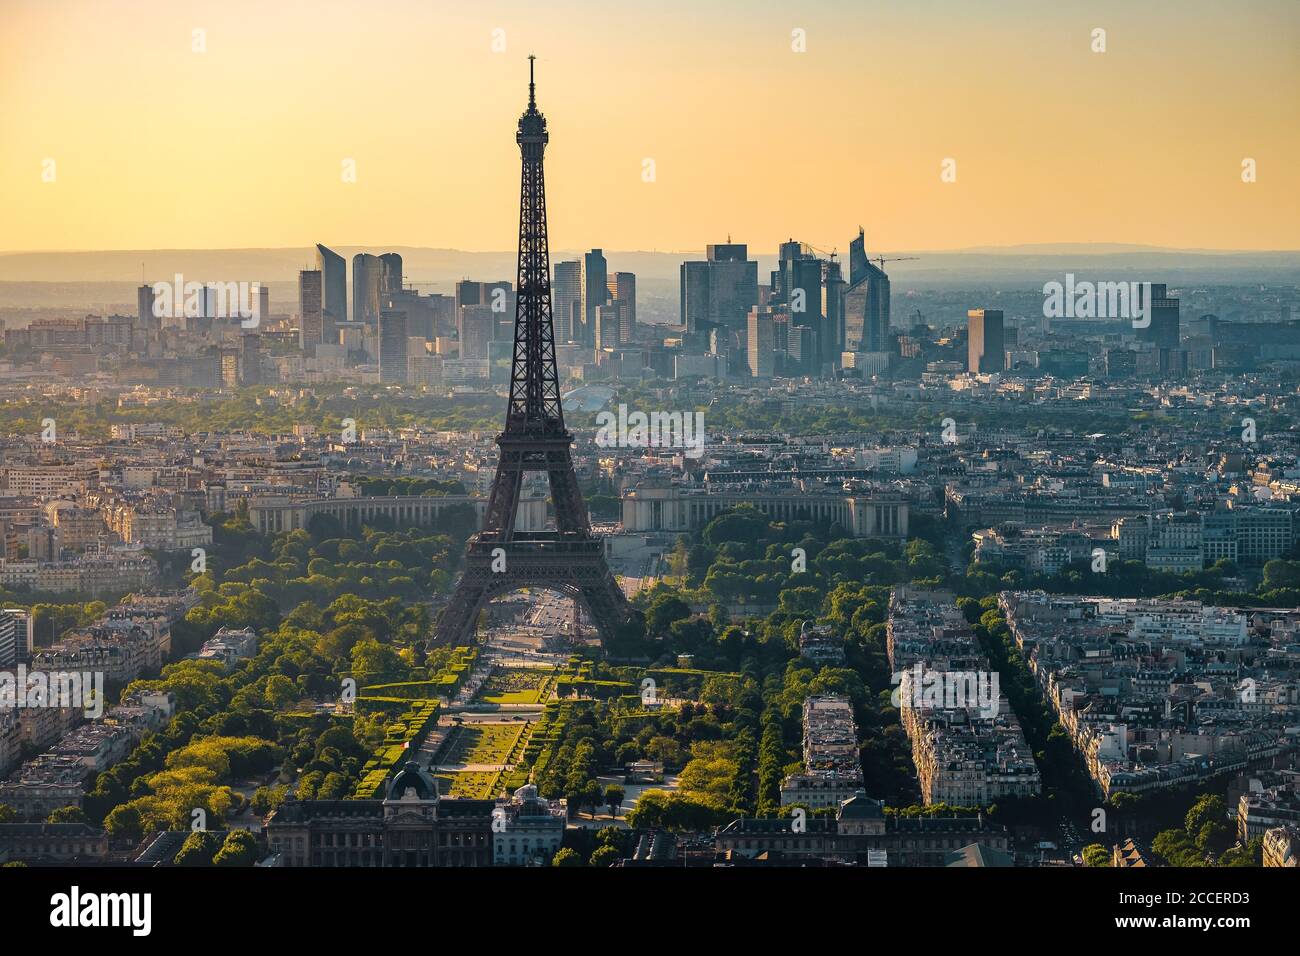 Europe, France, Paris, Eiffeltower, La tour Eiffel, champ de mars,7. Arrondissement Stock Photo